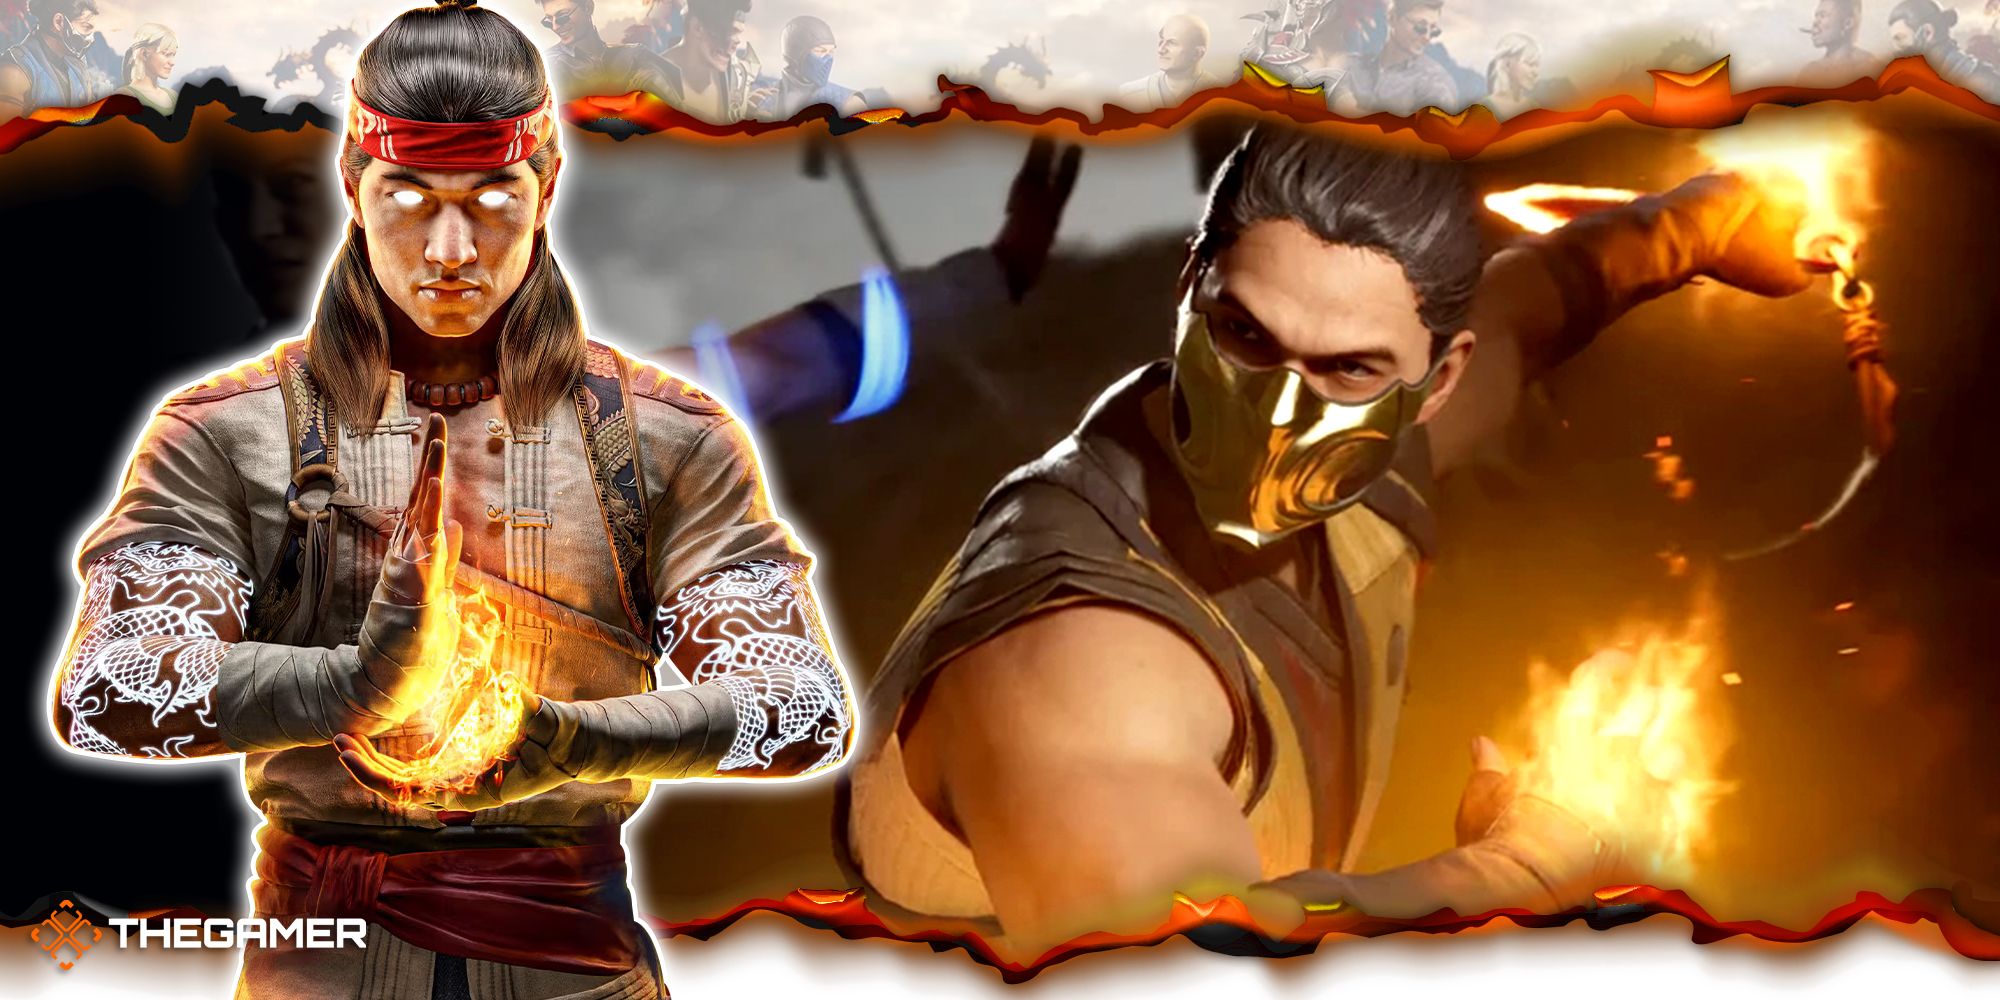 Mortal Kombat 1 Fatality List, How to Unlock Fatalities in Mortal Kombat 1?  - News